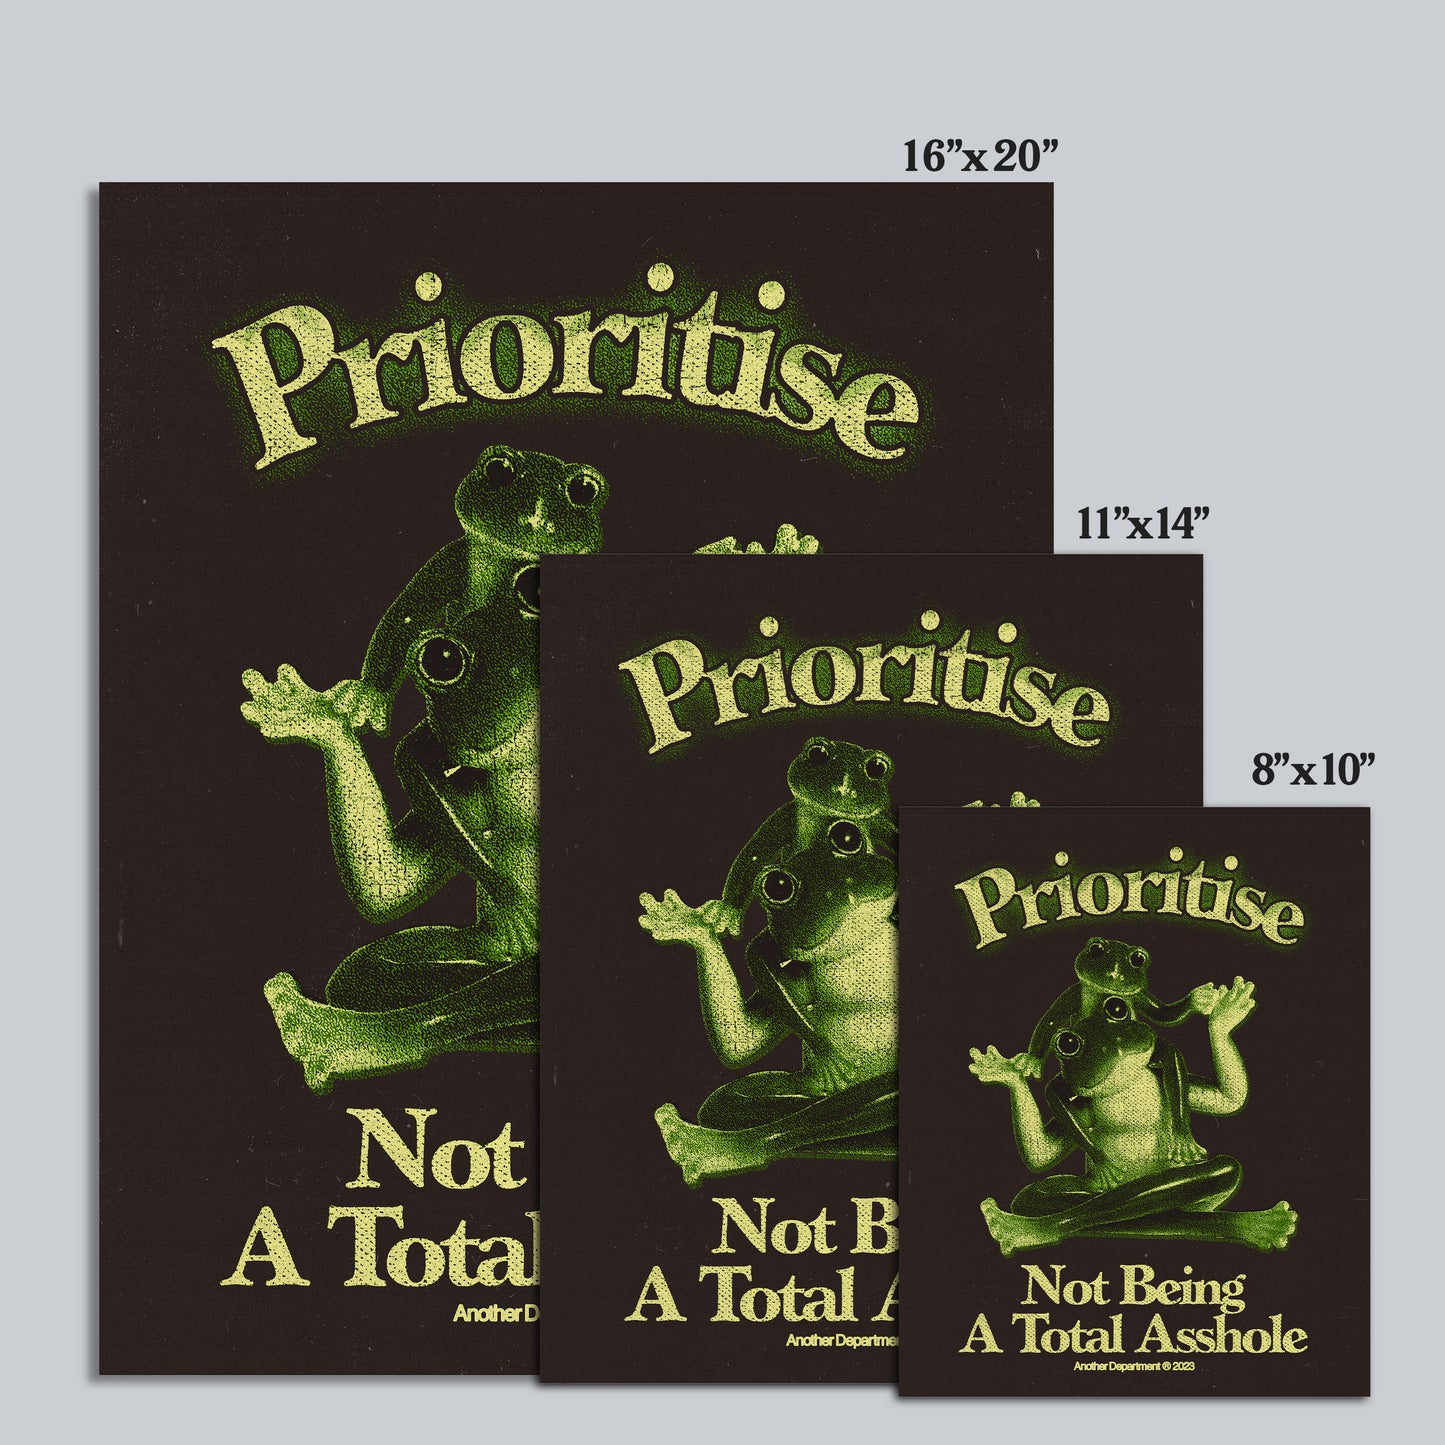 349 - Prioritise